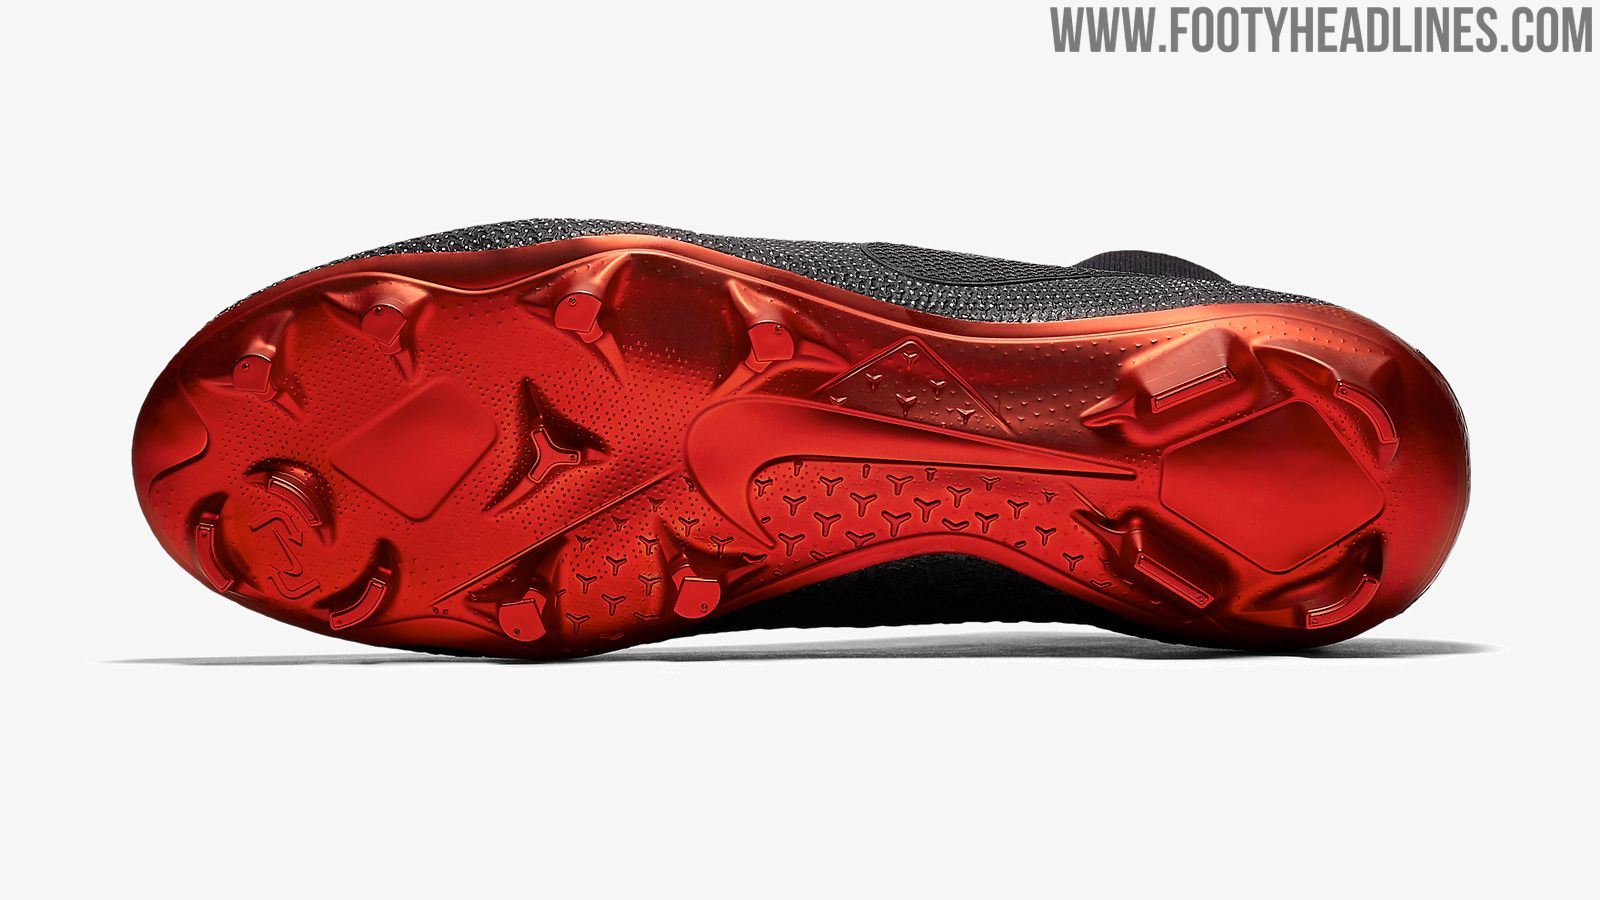 Hueso representante oro Nike x Jordan x PSG Phantom Vision Boots Revealed - Footy Headlines